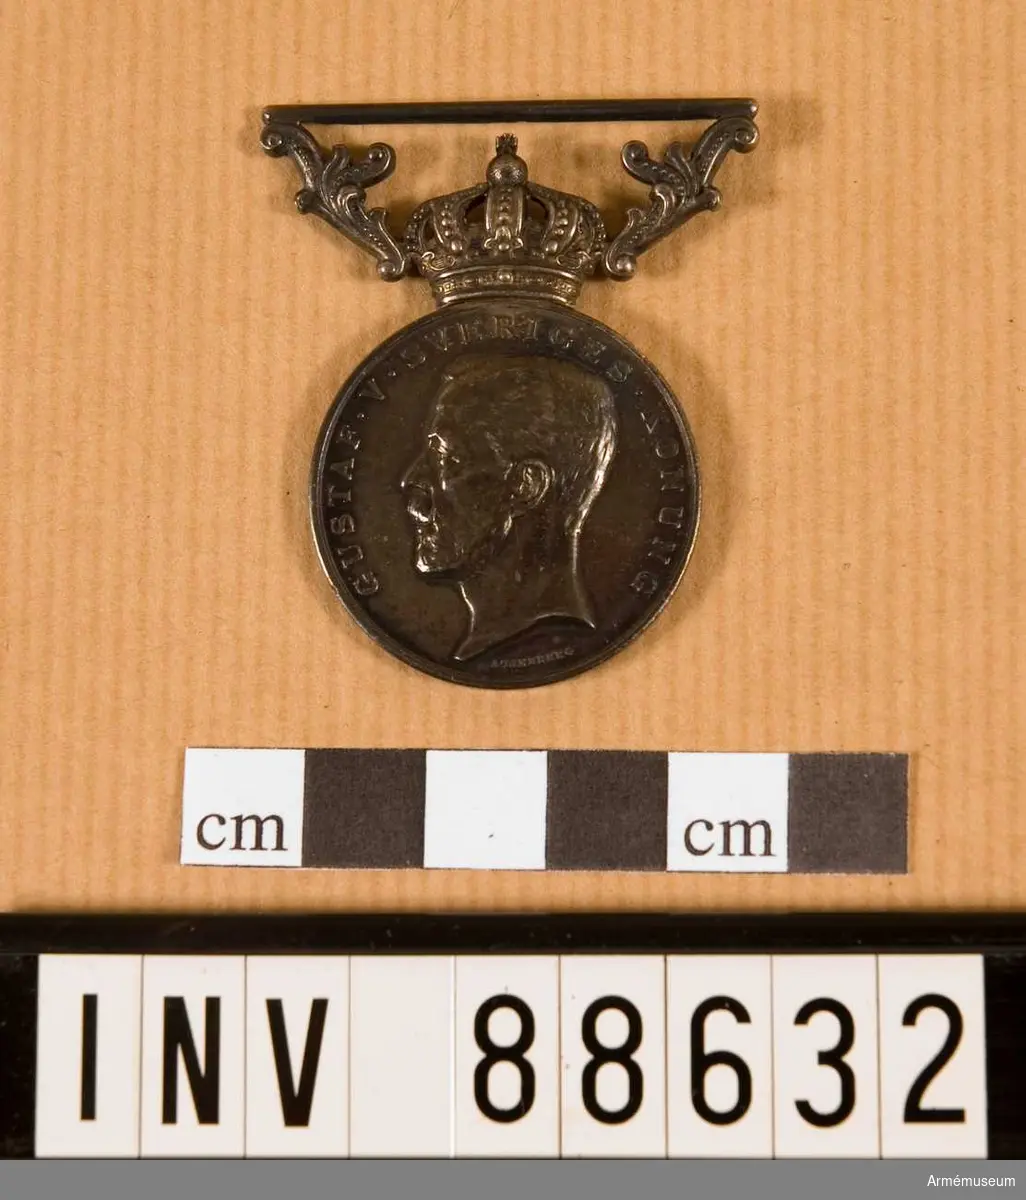 Förtjänstecknet tilldelat E. Gråå. Medaljen låg i käppi AM 88628. 